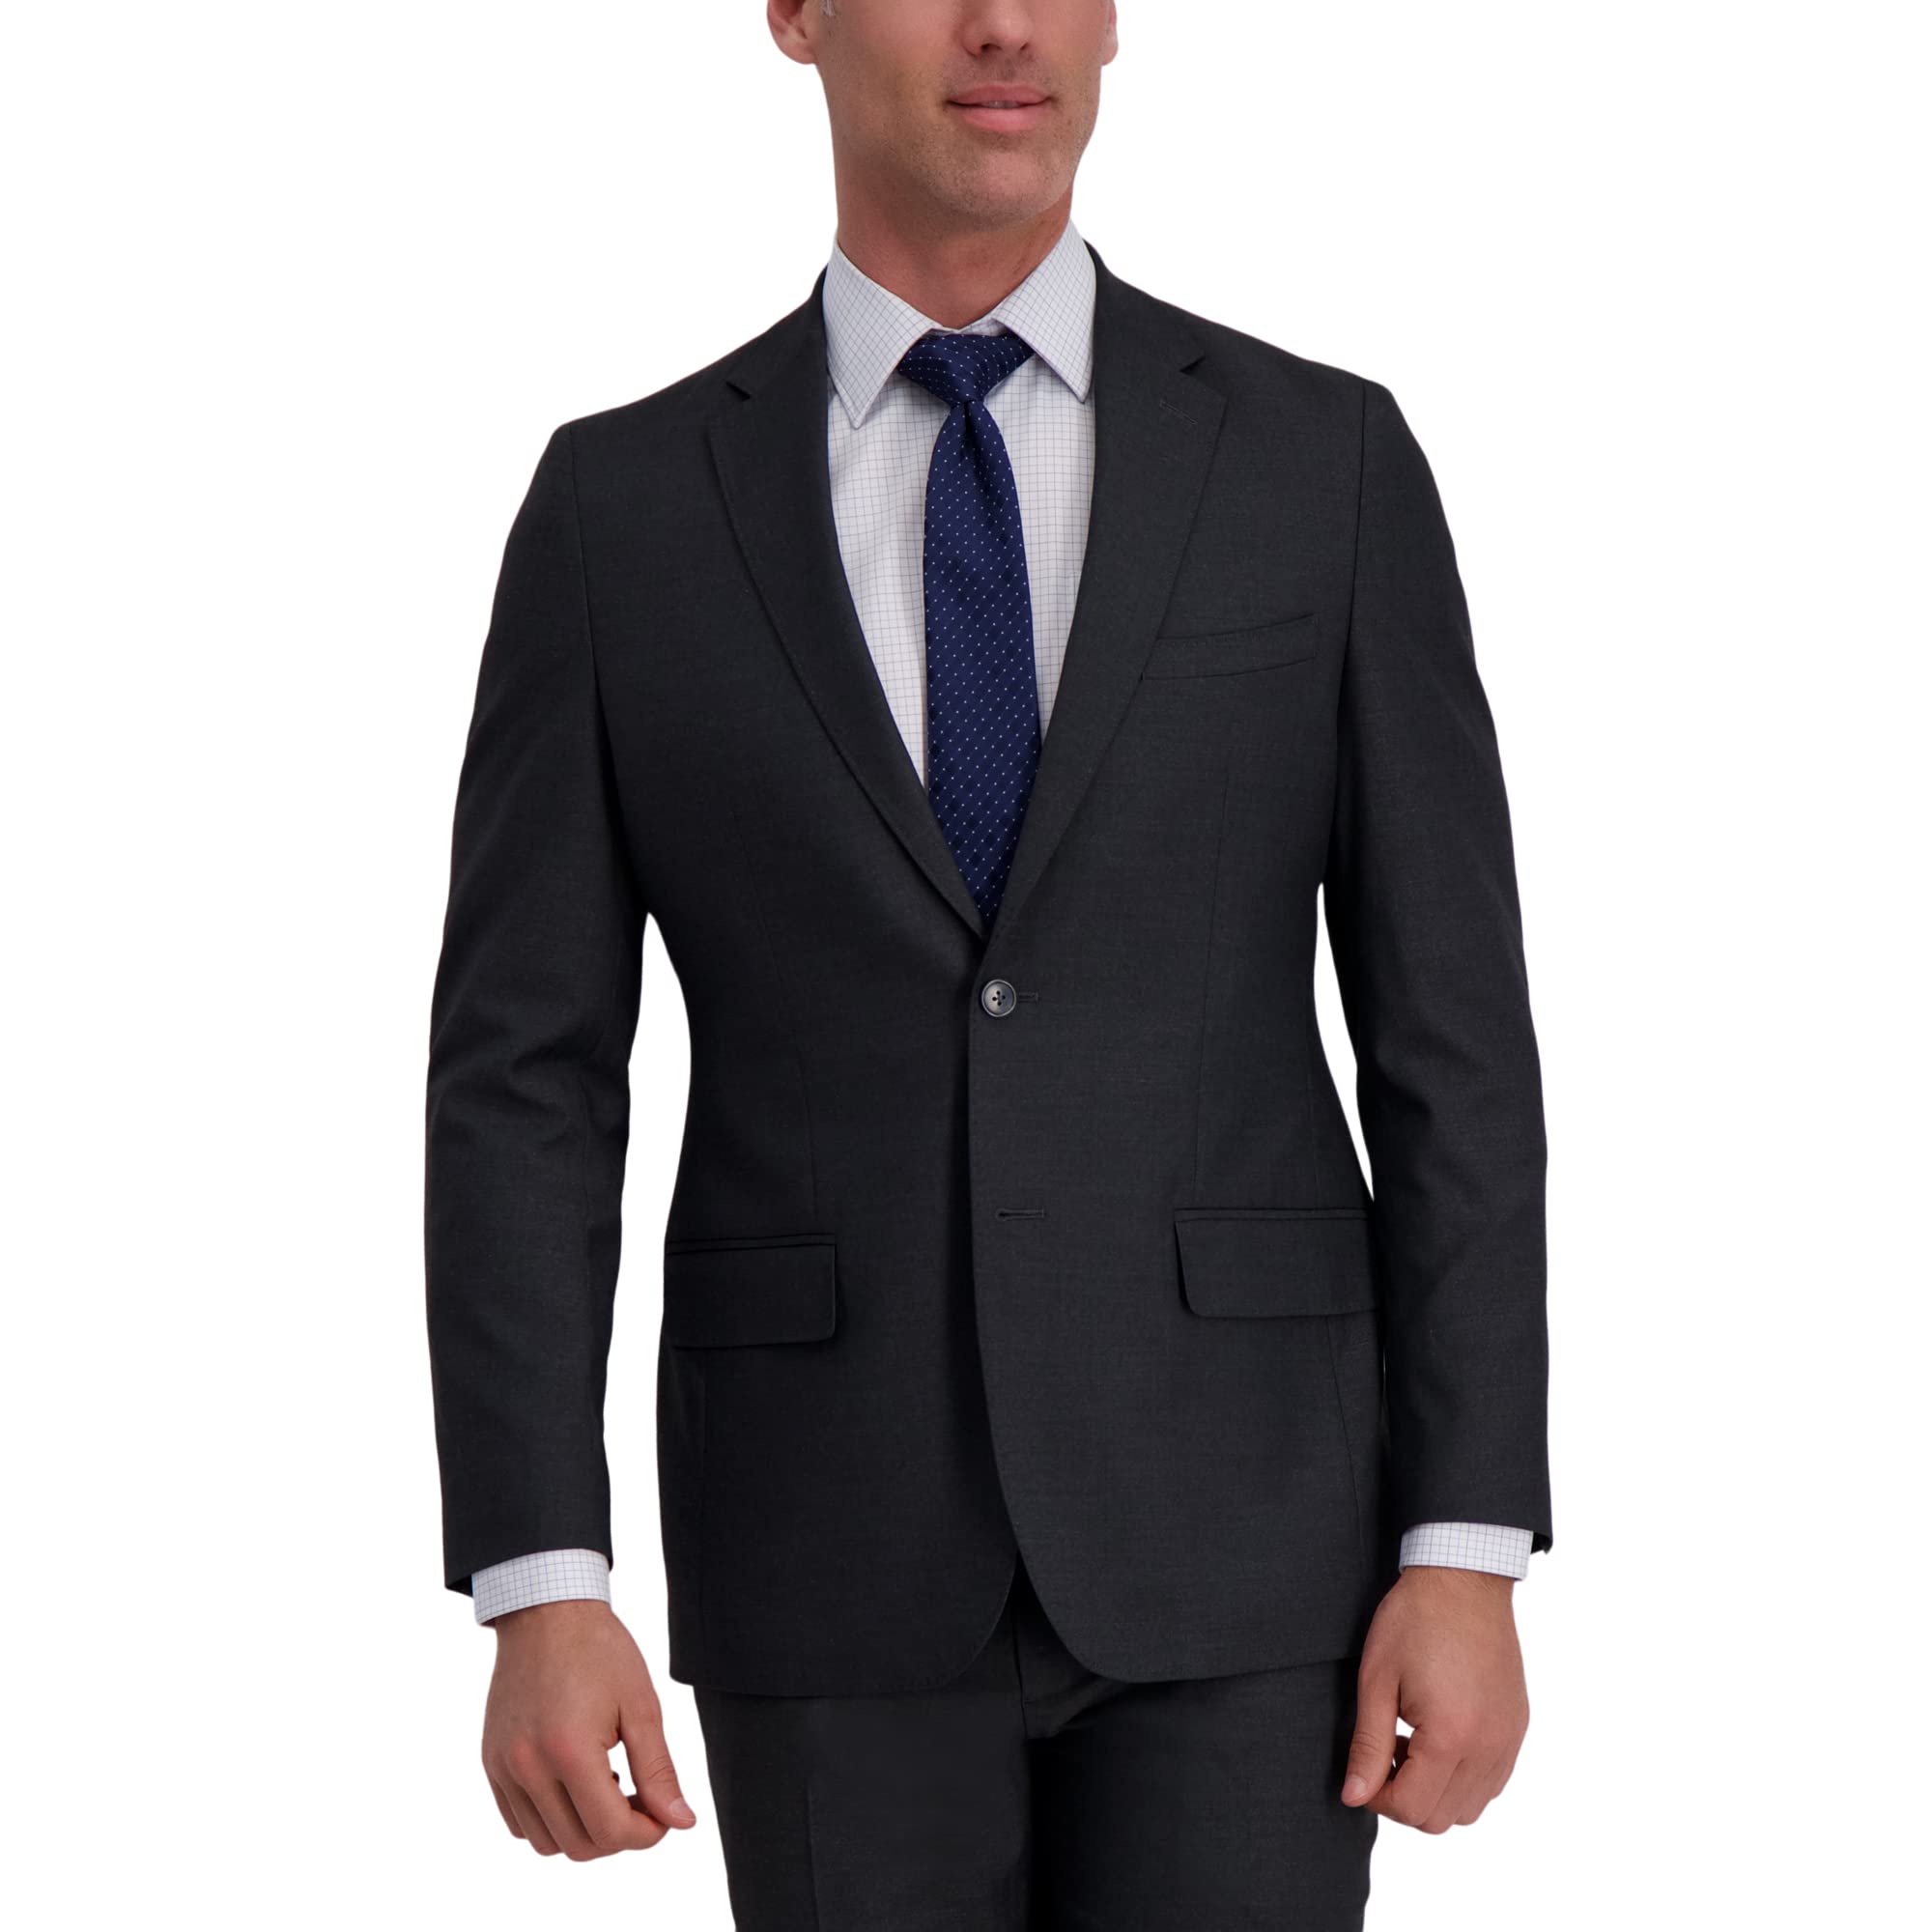 J.M. Haggar Men's Premium Stretch Tailored Fit Suit Separate Coat